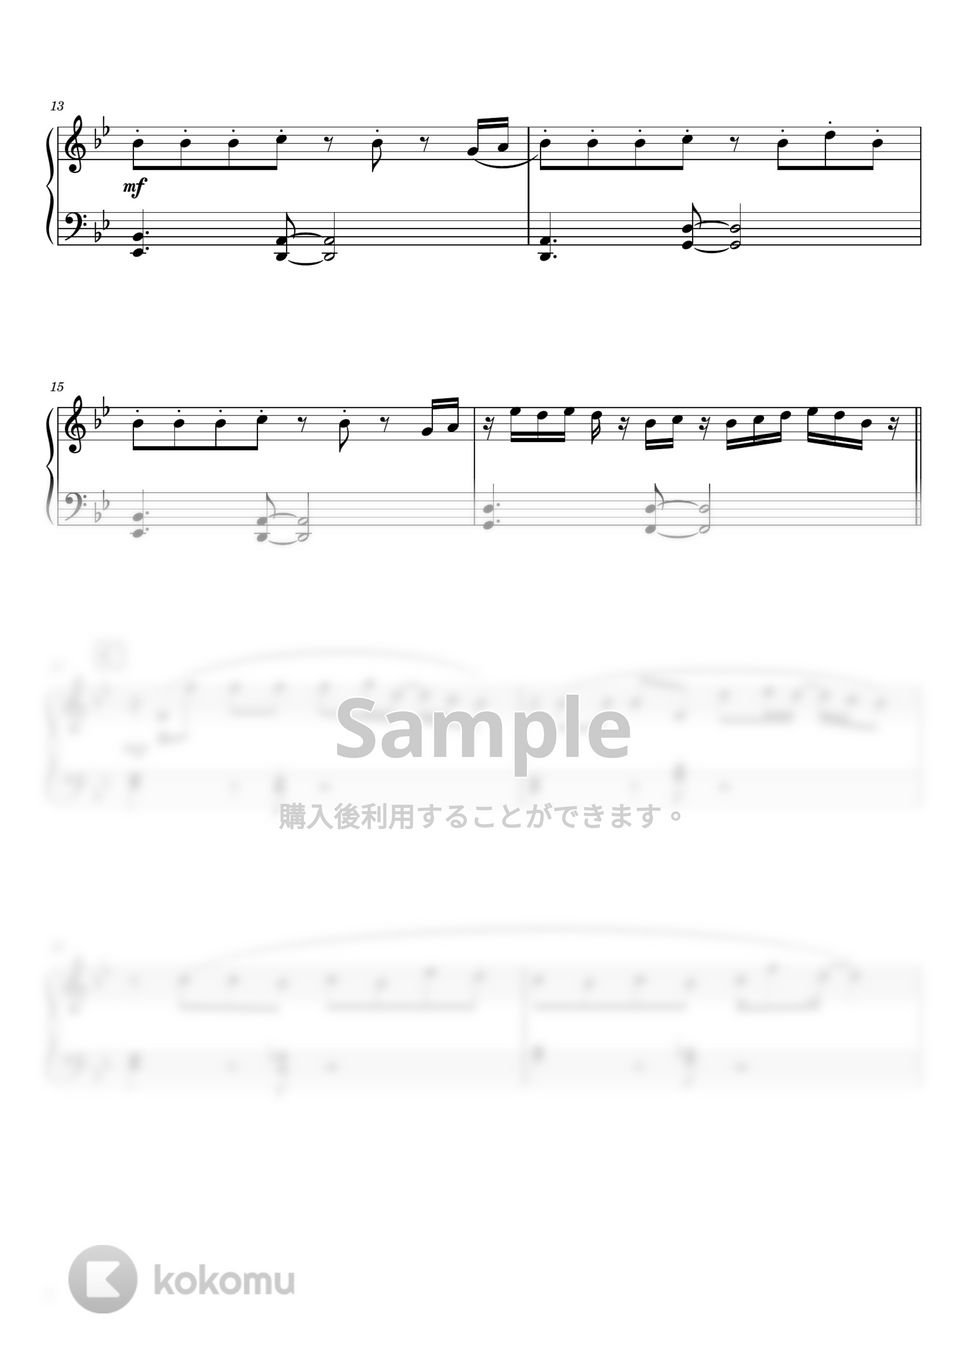 くじら - 金木犀 feat. Ado (ピアノソロ / 初級) by SuperMomoFactory